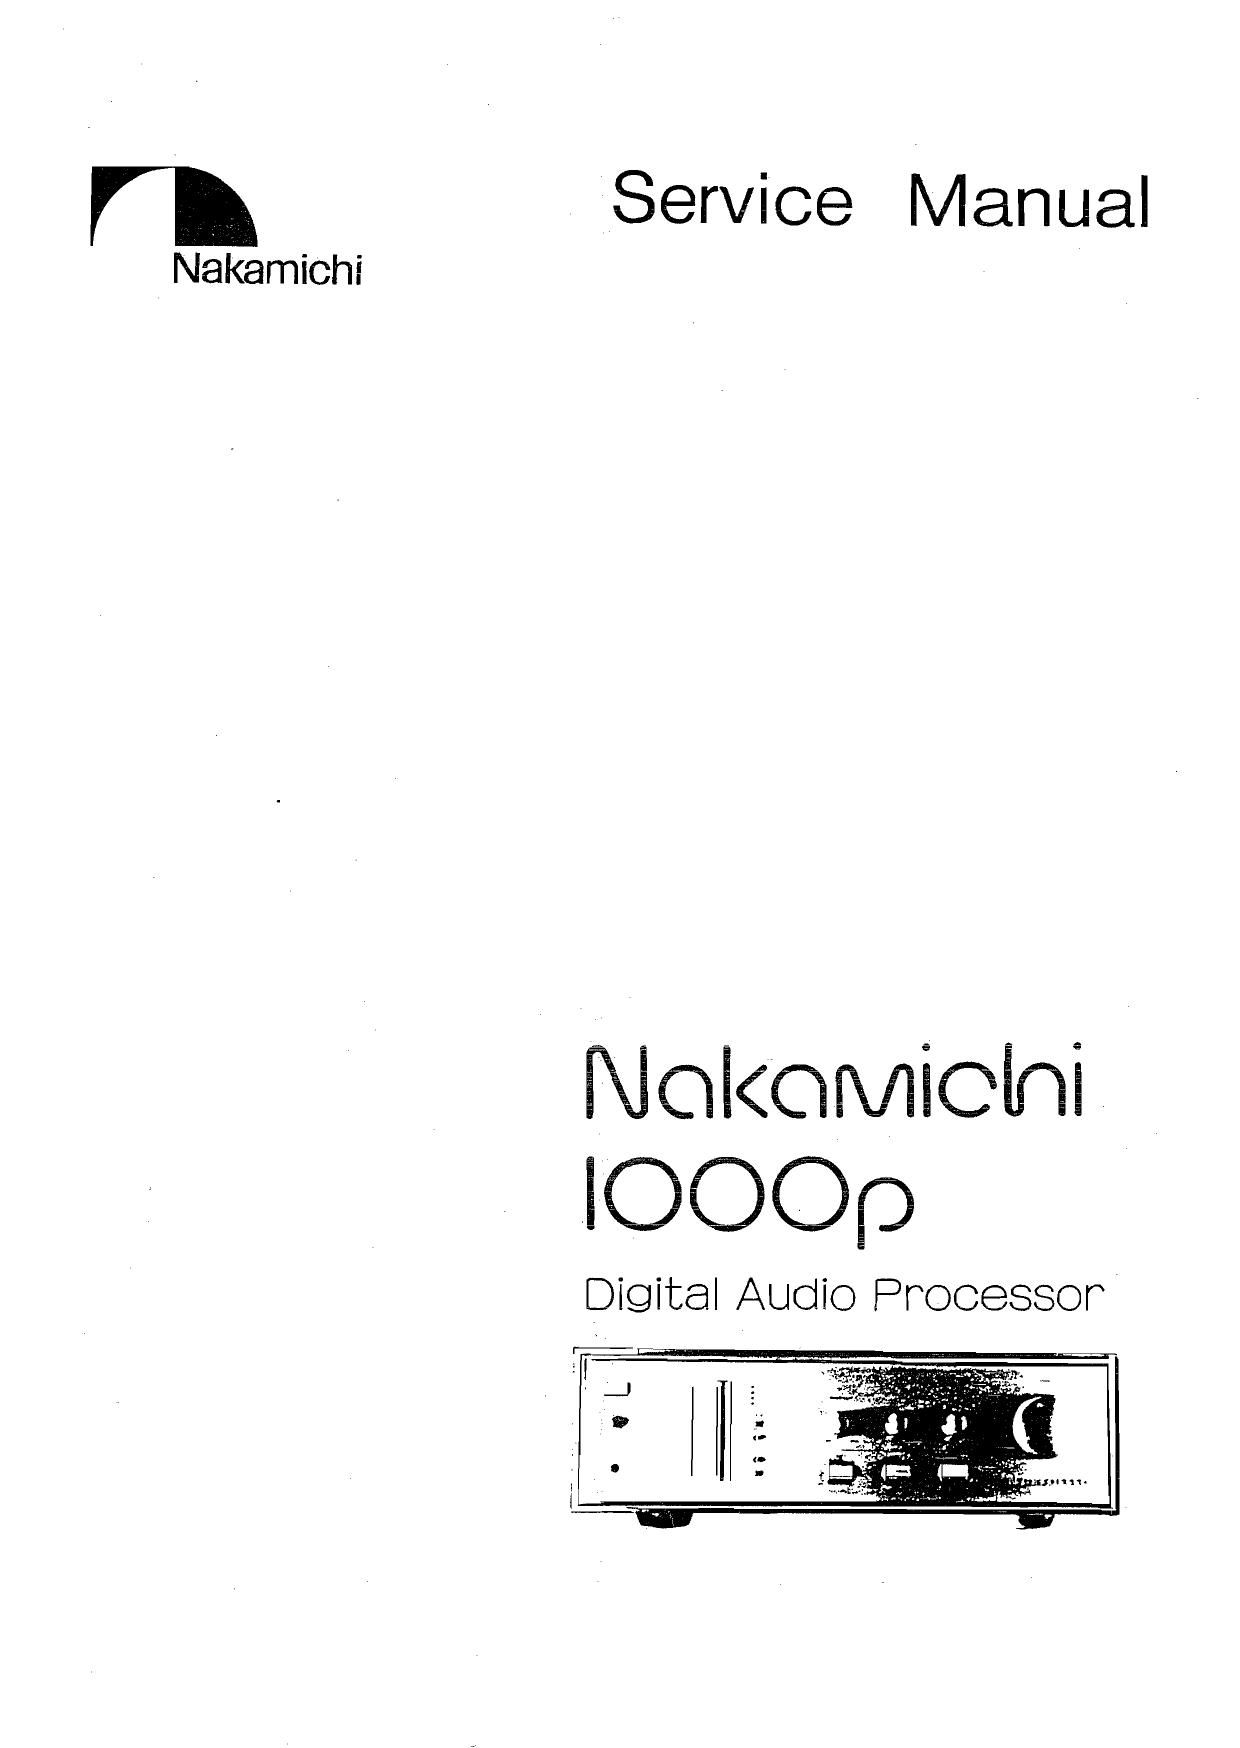 Nakamichi 1000 P Service Manual